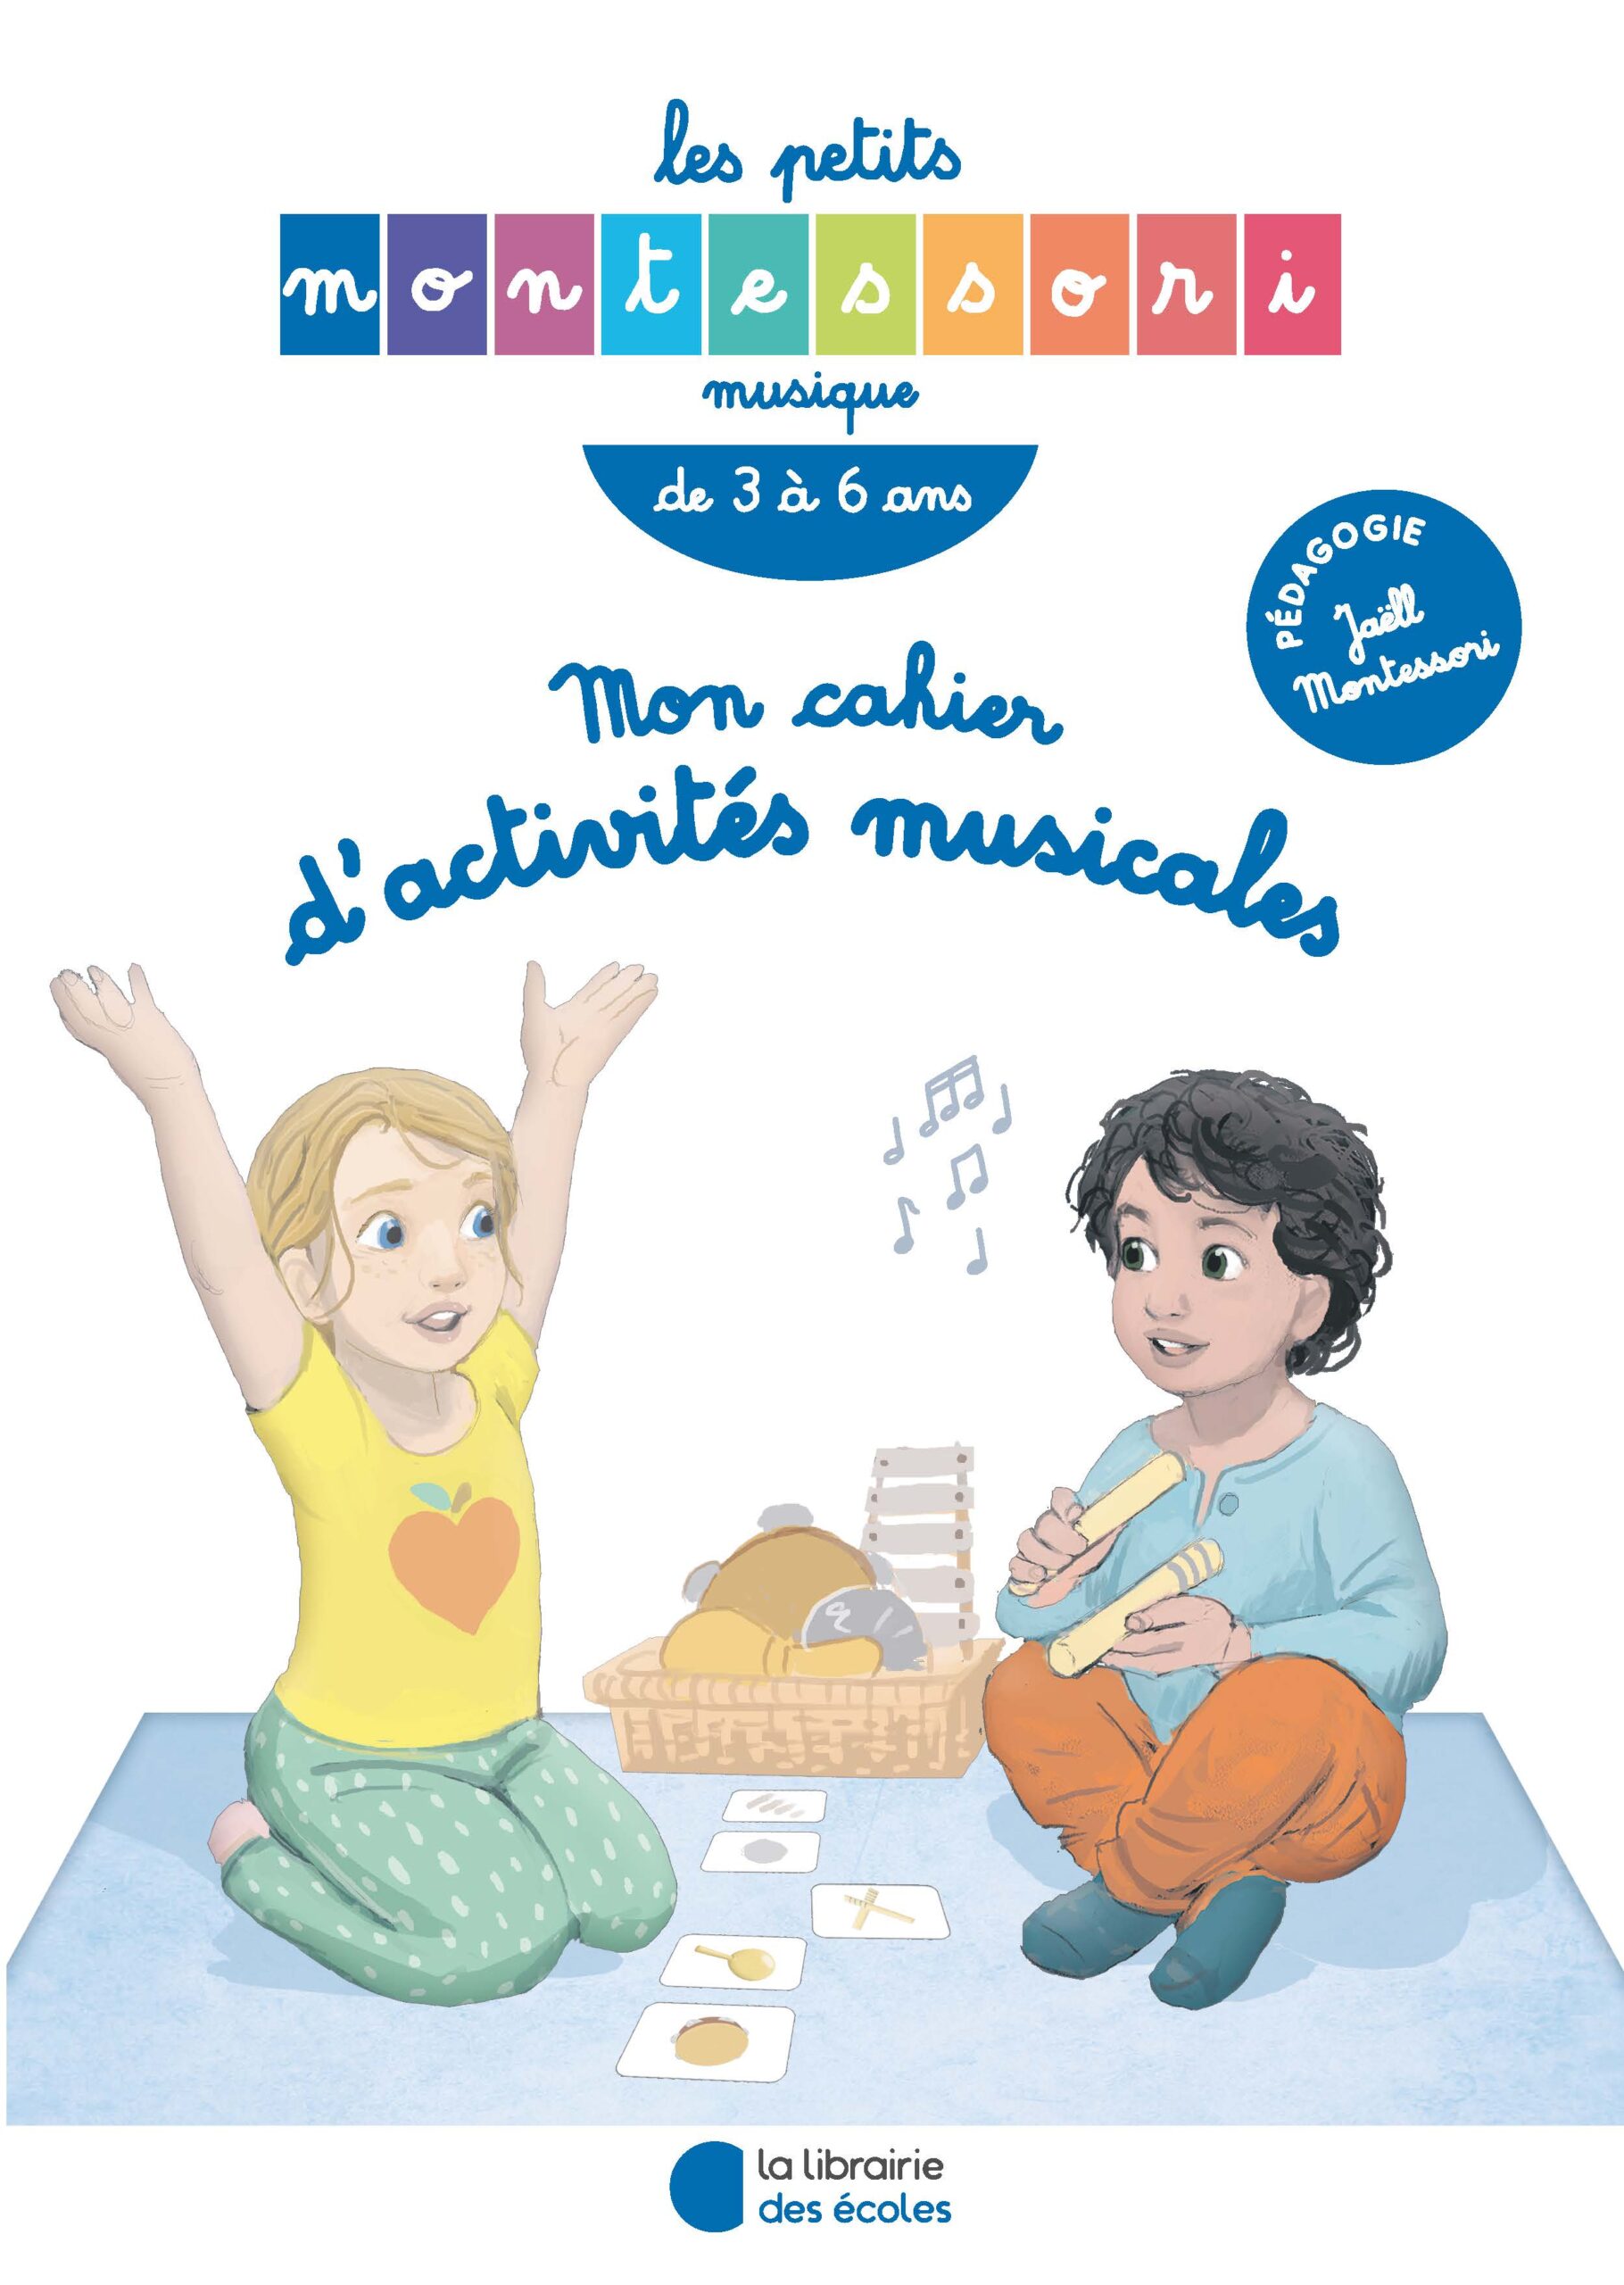 Activités Montessori pour enfant de 0 à 1 an – Le Petit Montessori